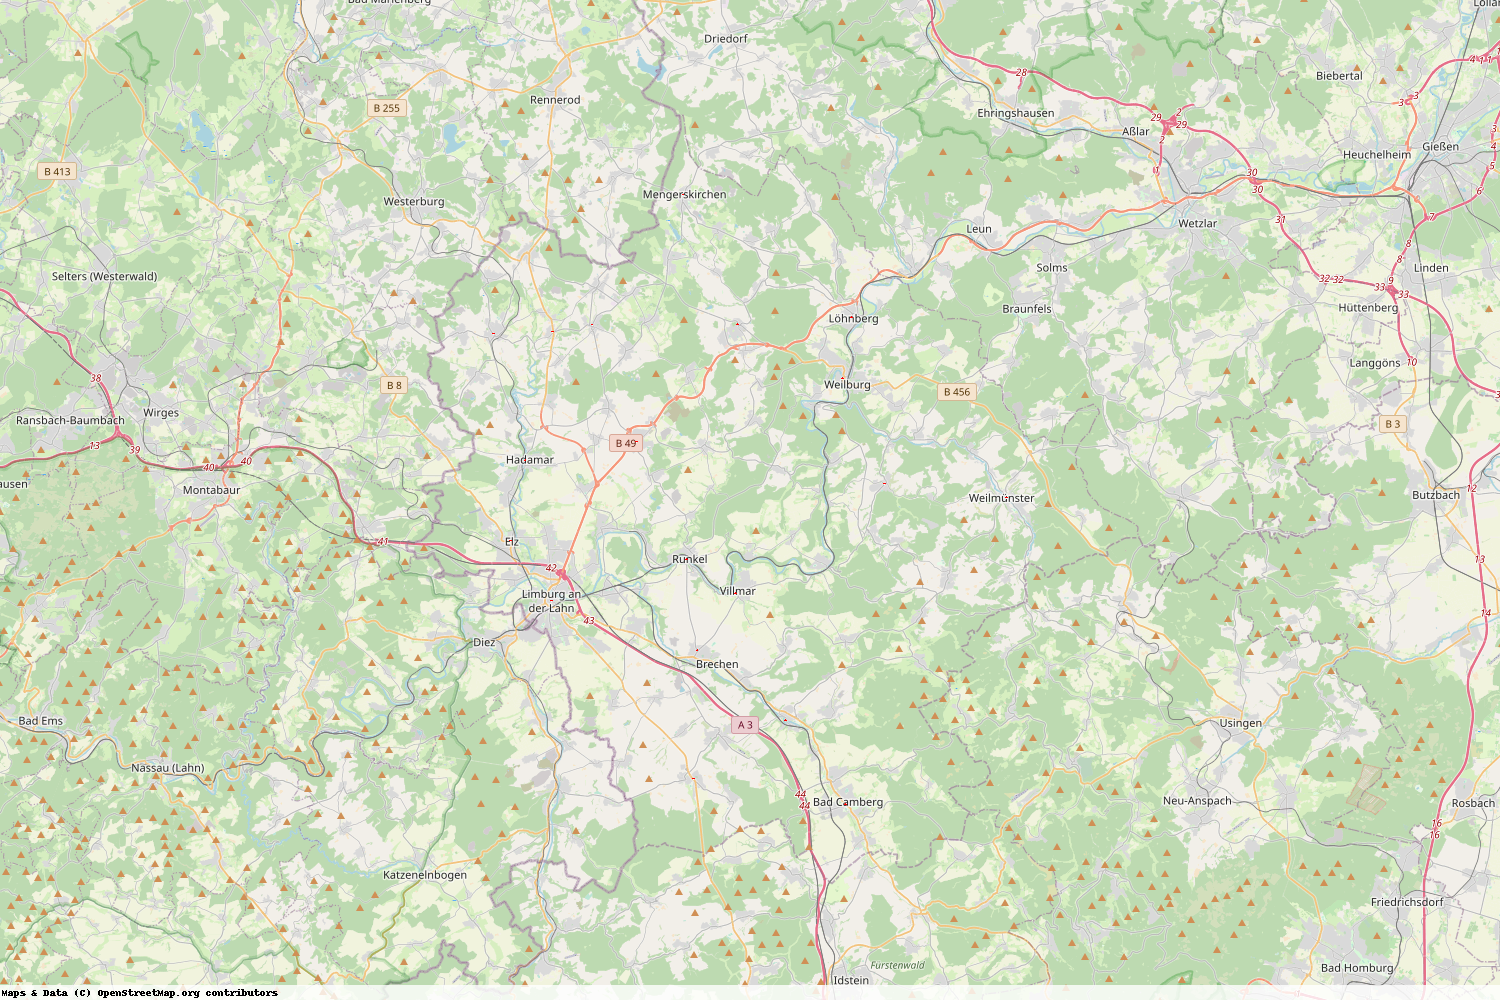 Ist gerade Stromausfall in Hessen - Limburg-Weilburg?